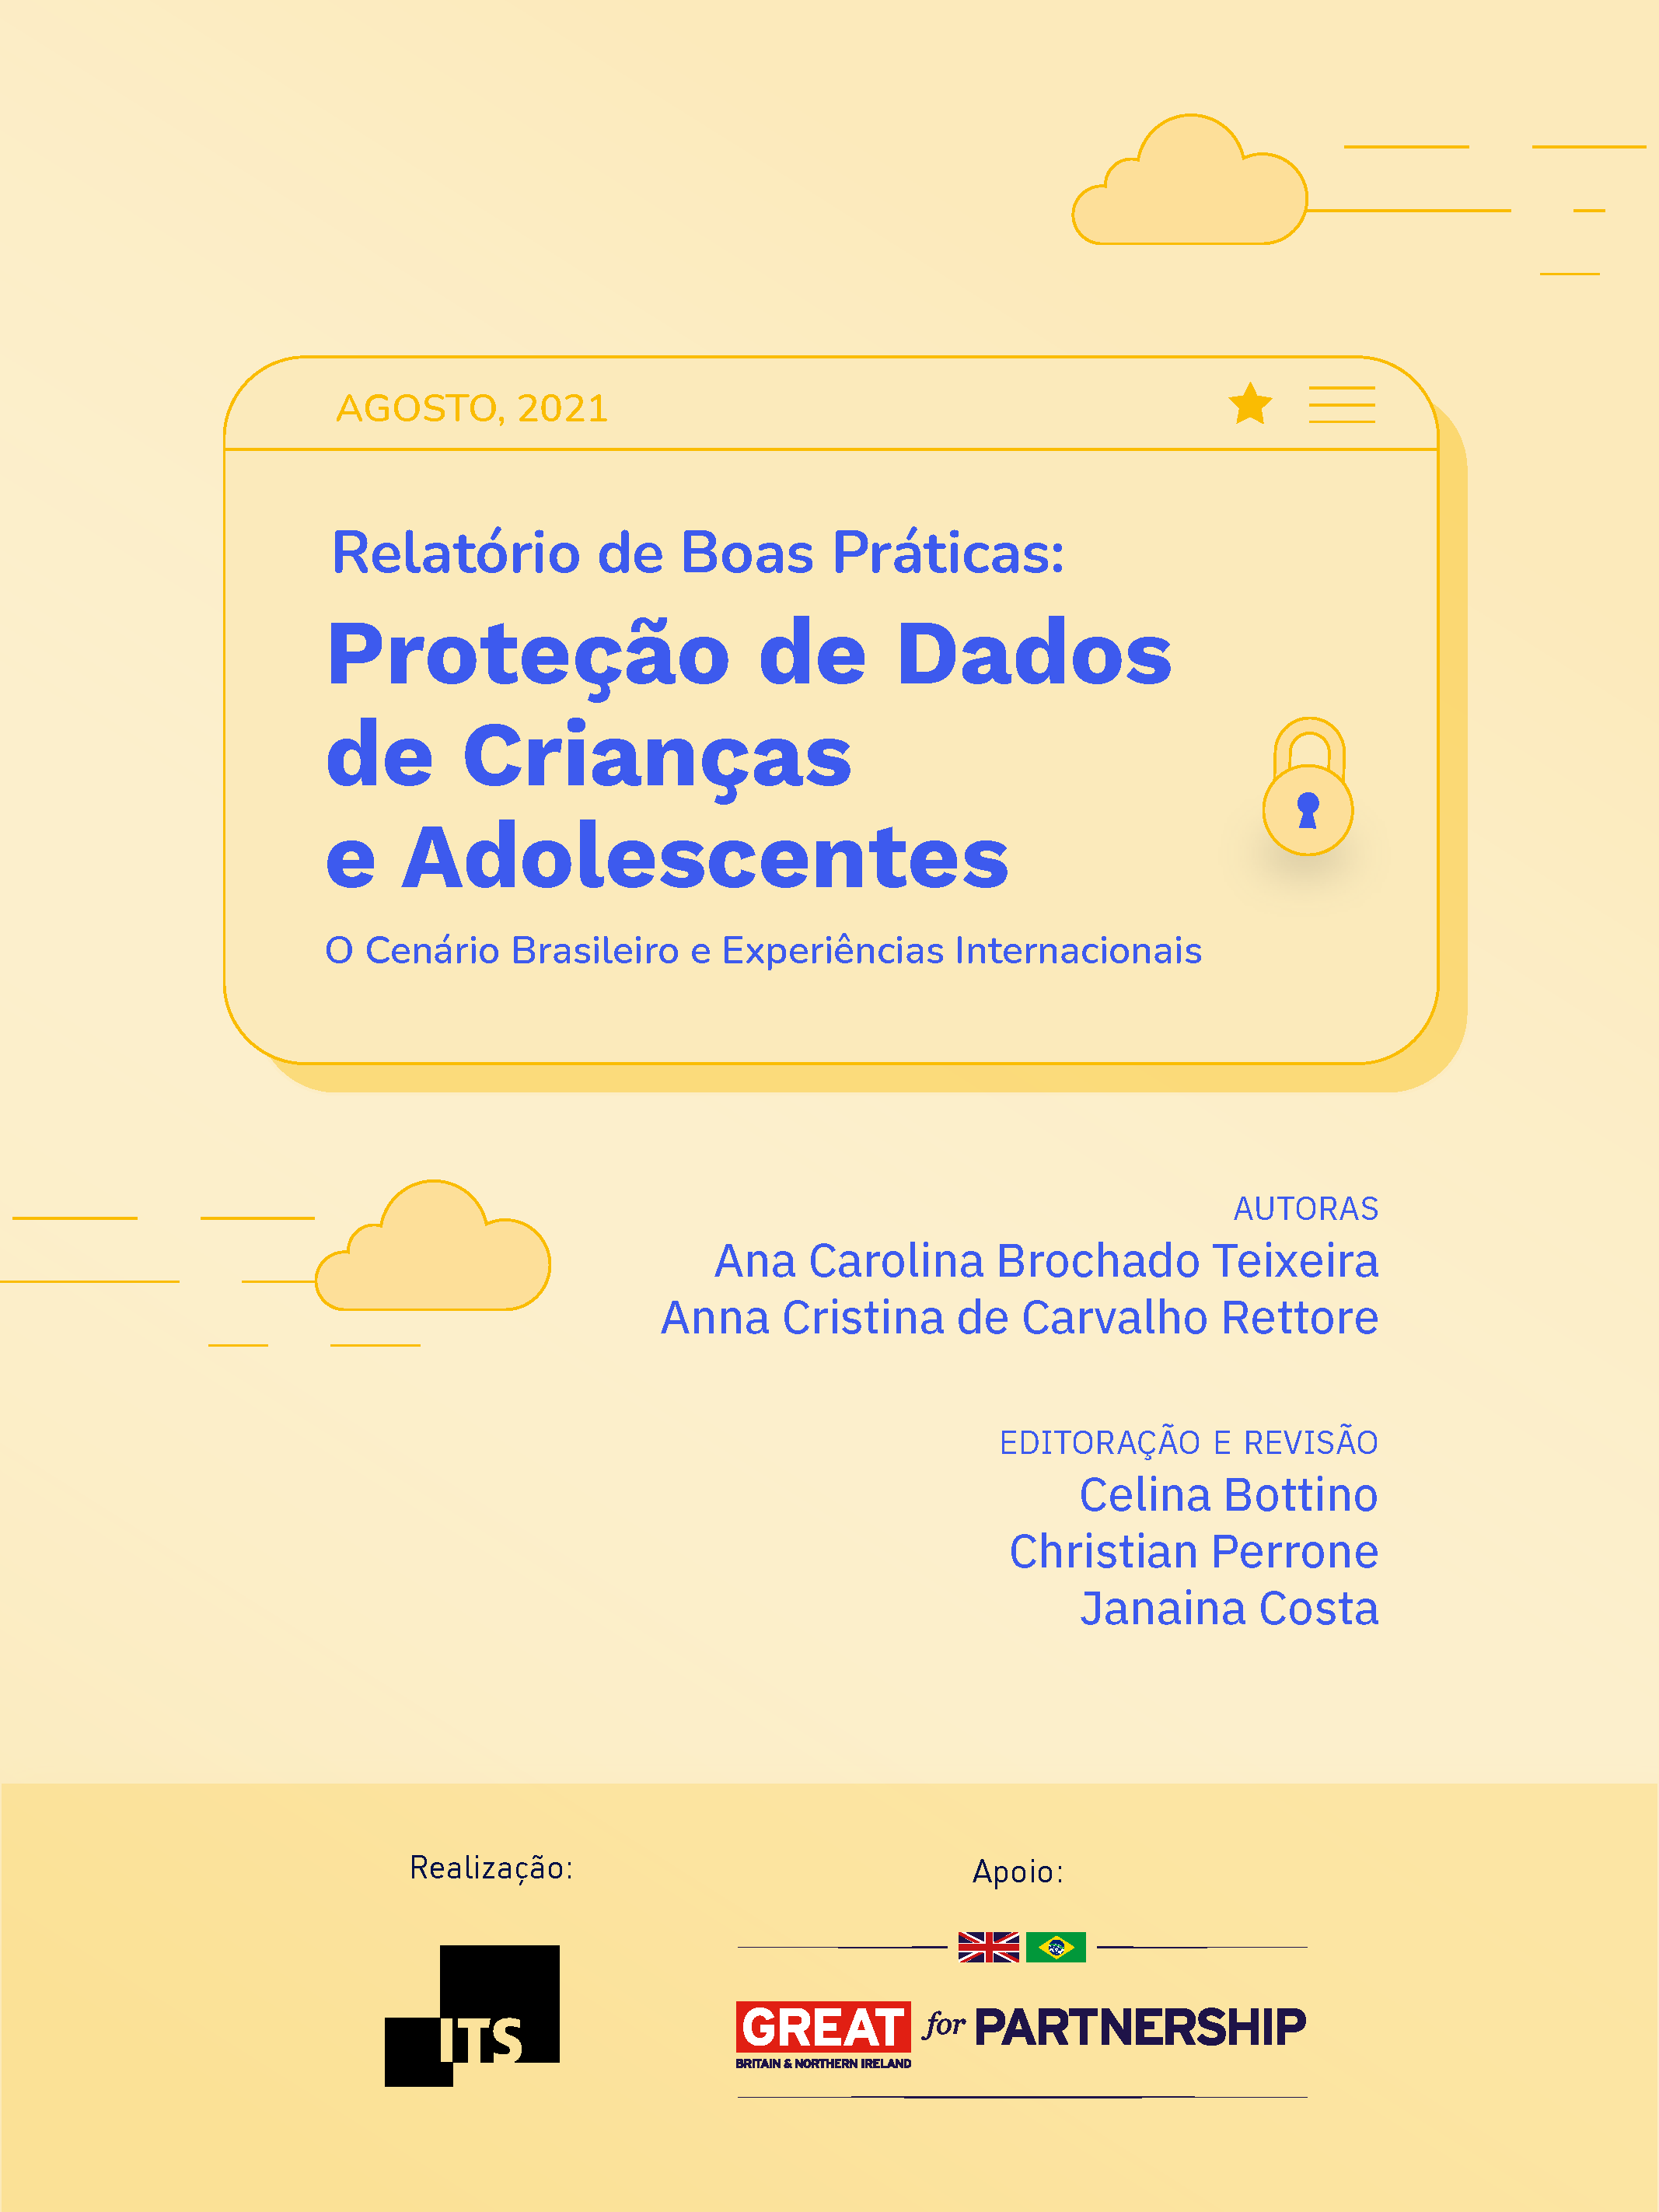 capa do documento "Relatório de Boas Práticas: Proteção de Dados de Crianças e Adolescentes"